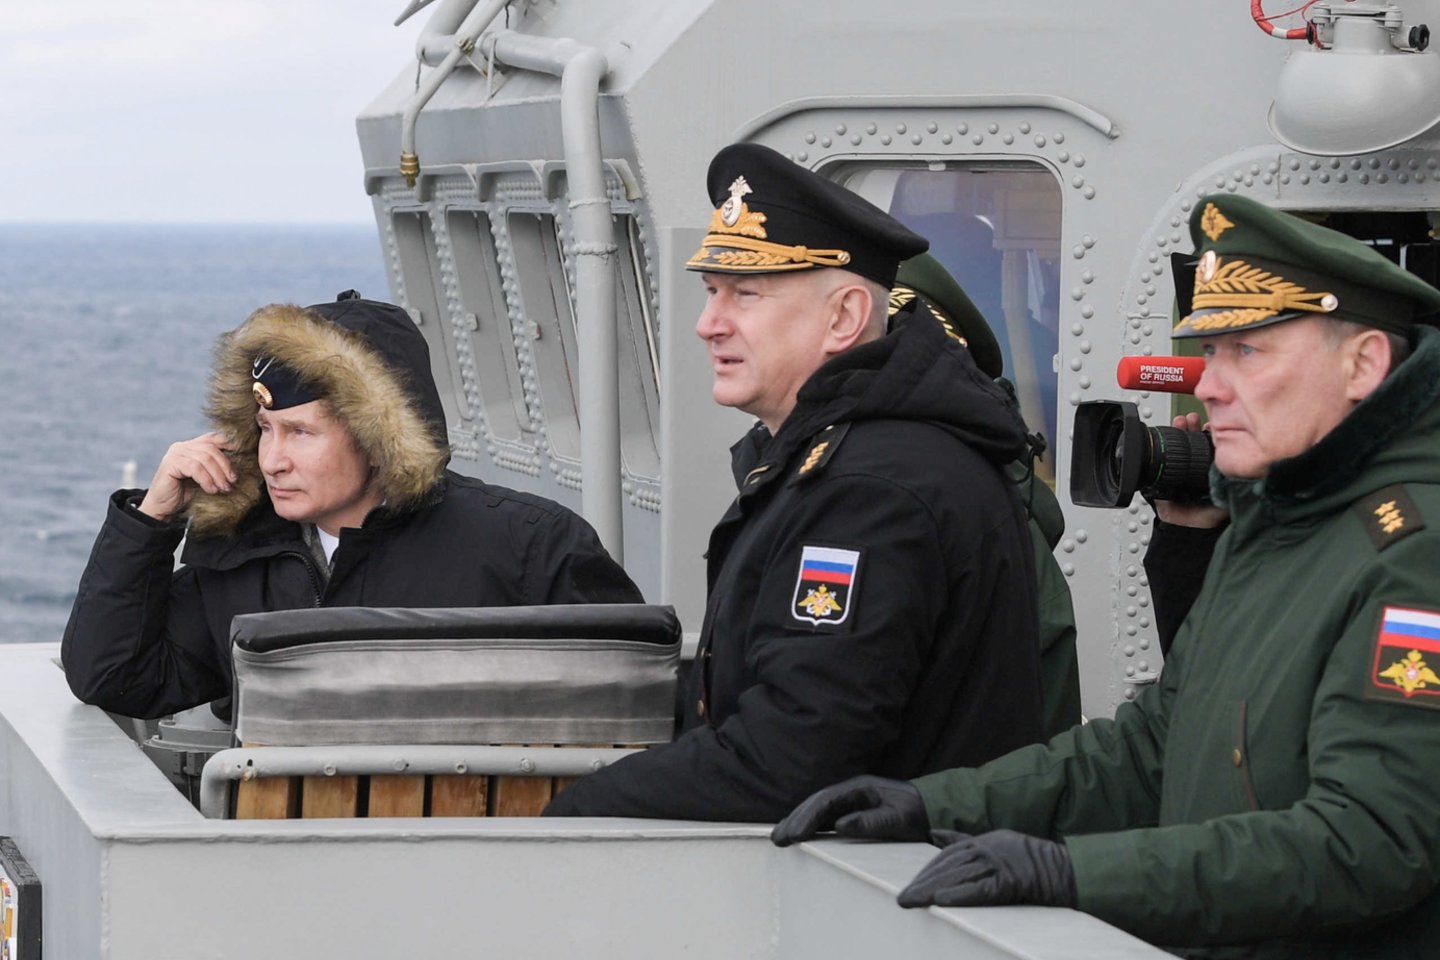  V.Putinas (kairėje) ir A.Dvornikovas (dešinėje) per pratybas Juodosios jūros regione 2020-aisiais.<br> Reuters/Scanpix nuotr.